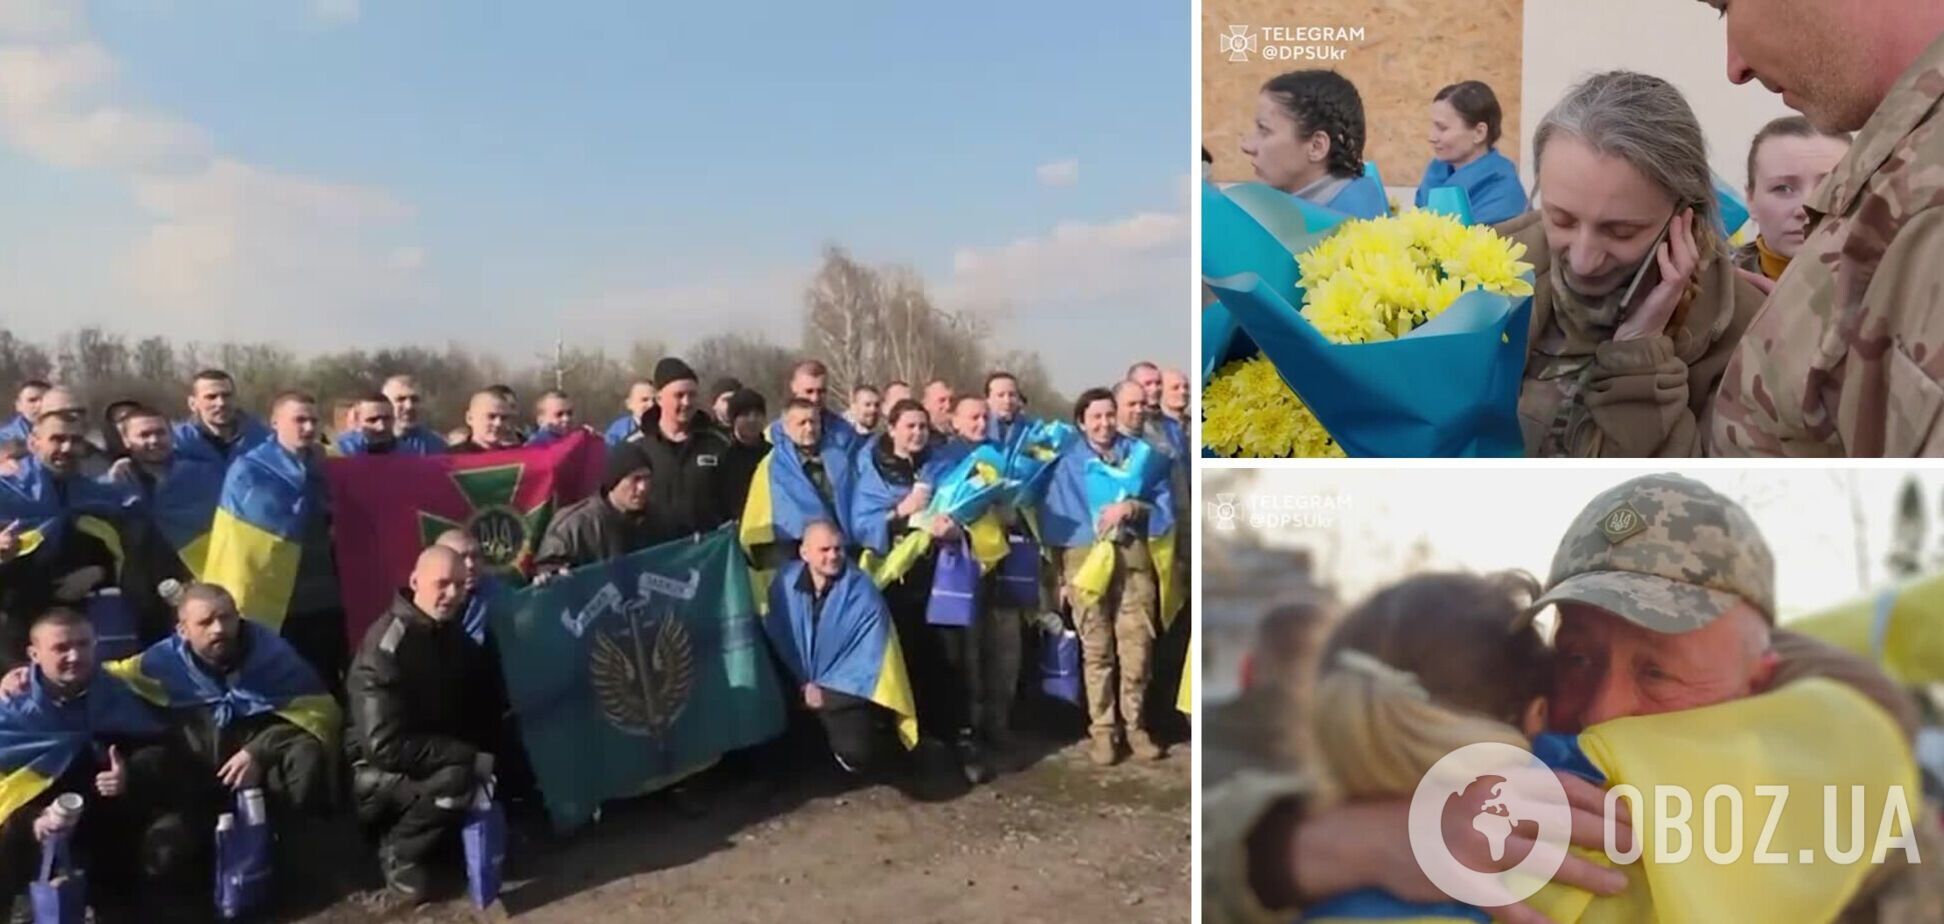 'Мама, я вернулся!' В ГПСУ показали эмоциональные кадры с освобожденными из российского плена украинцами. Видео